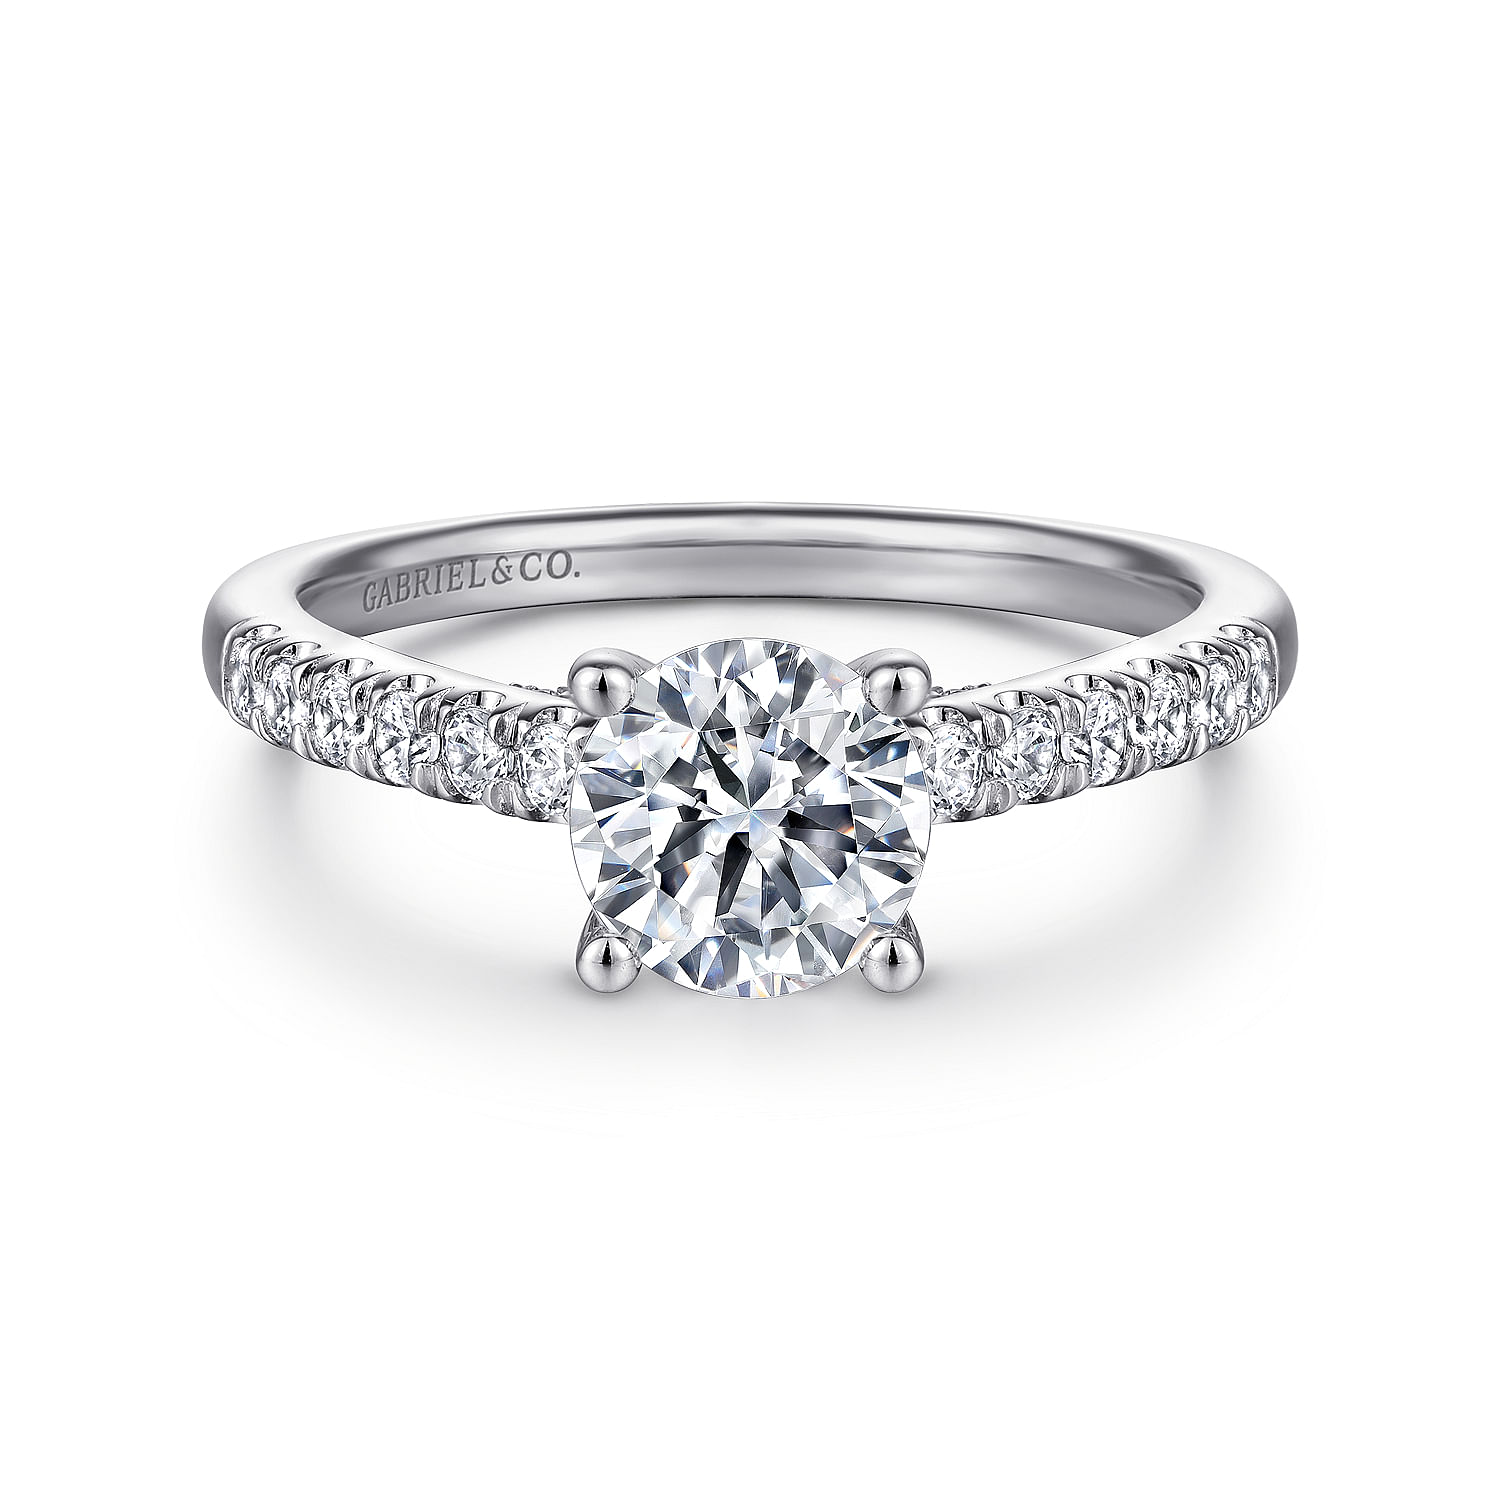 Jones - 14K White Gold Round Diamond Engagement Ring